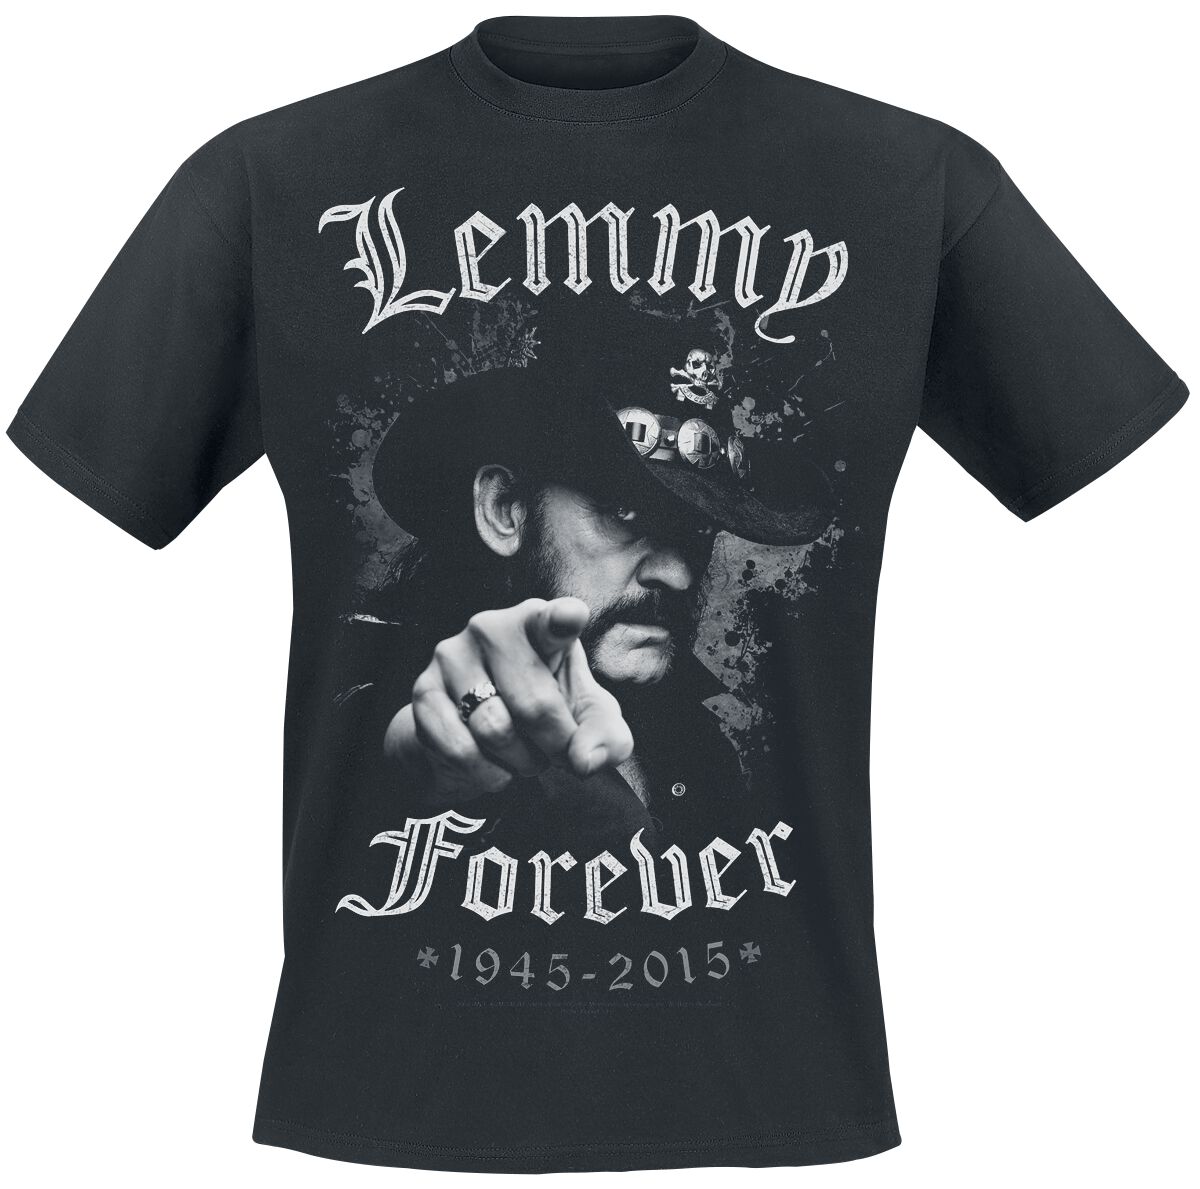 Motörhead T-Shirt - Lemmy - Forever - M bis 5XL - für Männer - Größe XXL - schwarz  - EMP exklusives Merchandise!